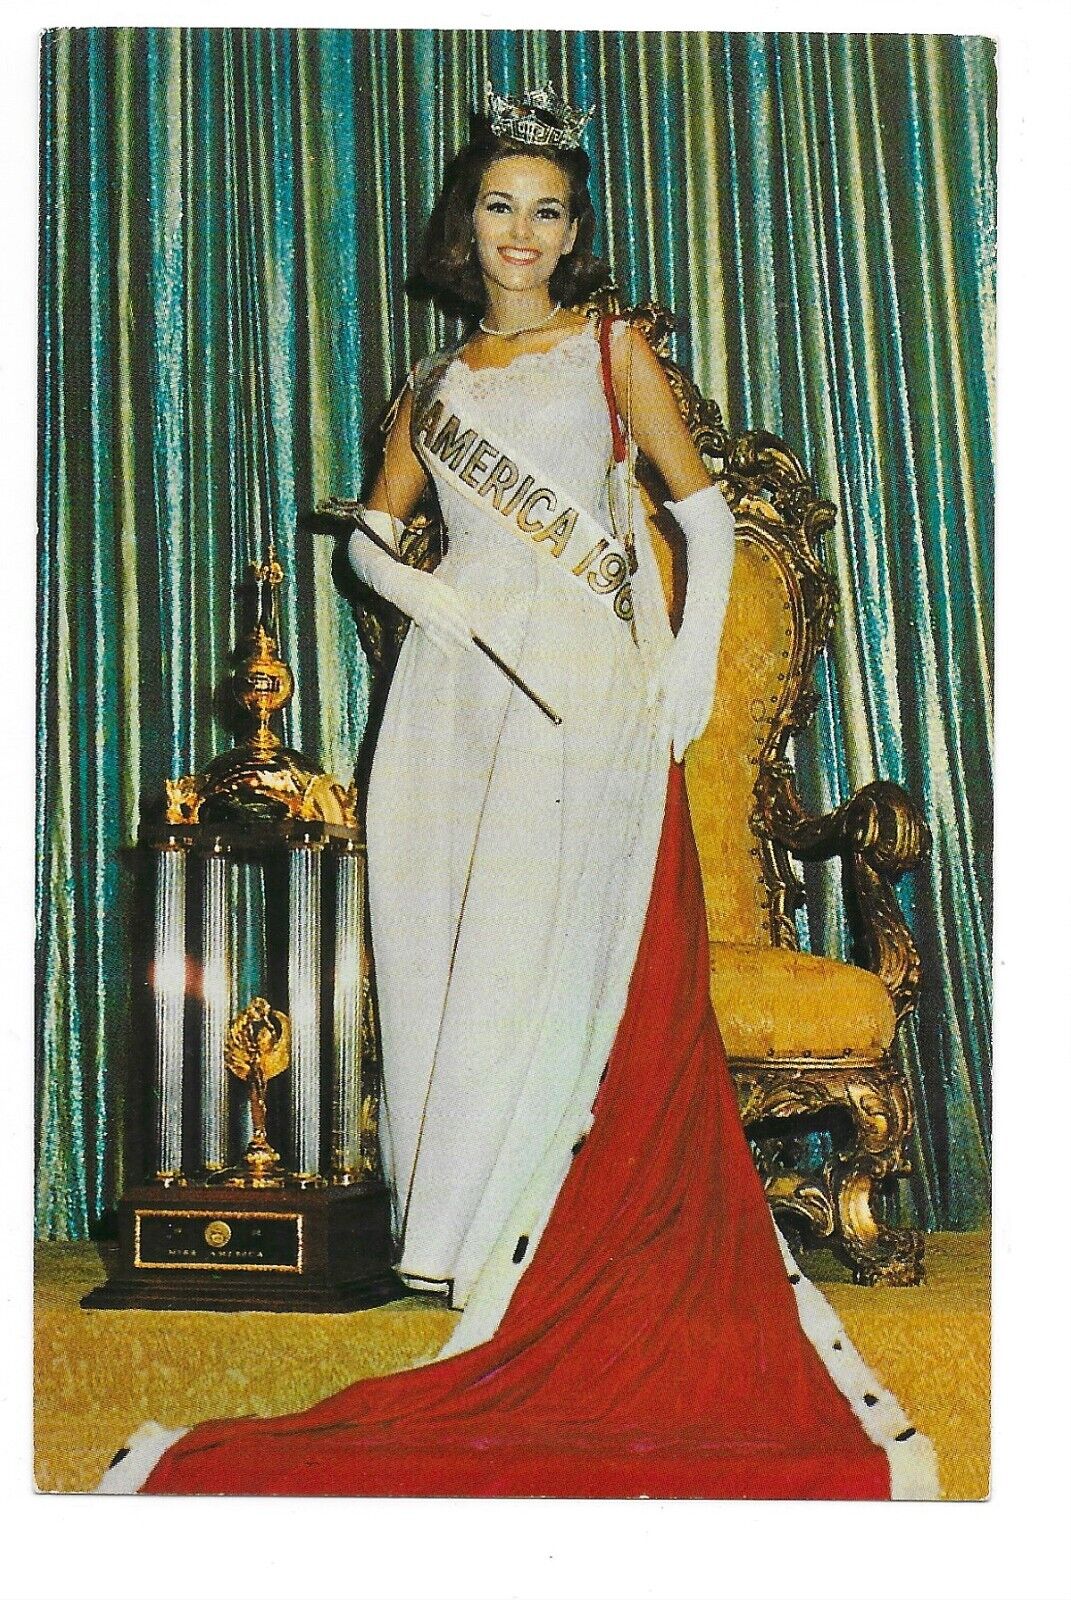 c1960s Deborah Irene Bryant Selected Miss America 1966 Atlantic City NJ Postcard